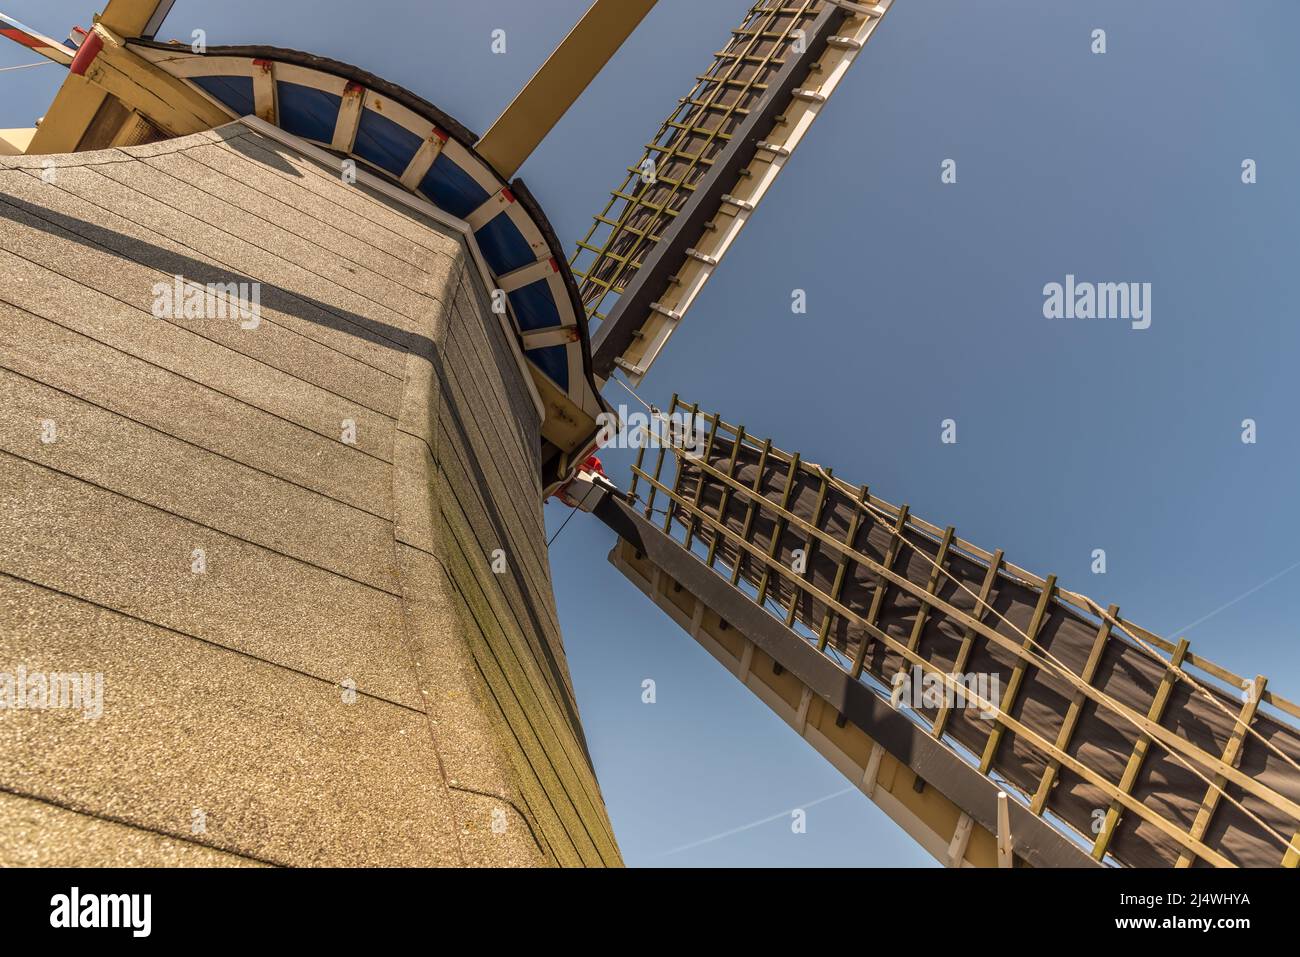 Lisse, Países Bajos, abril de 2022. La campana de un molino holandés tradicional desde una perspectiva baja. Fotografías de alta calidad Foto de stock